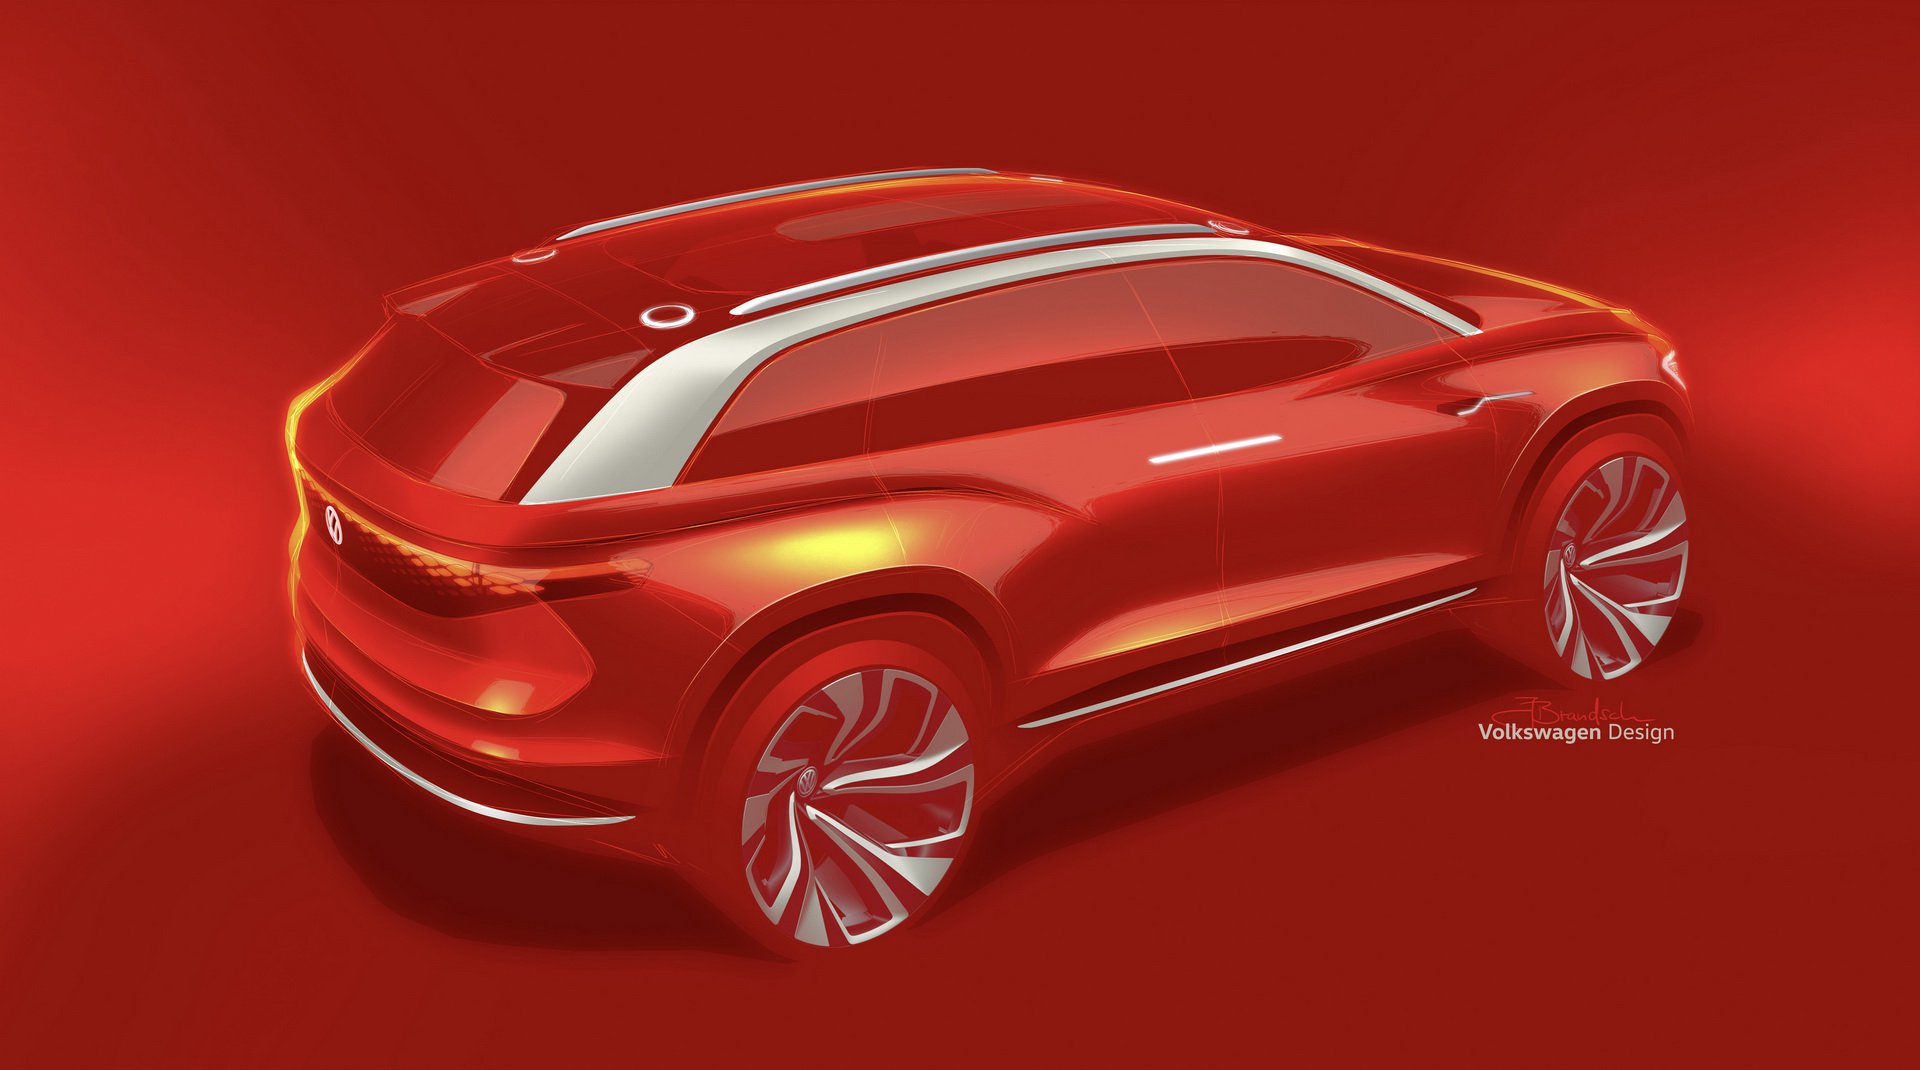 Volkswagen ID. Roomzz Concept, 2019 - Design Sketch